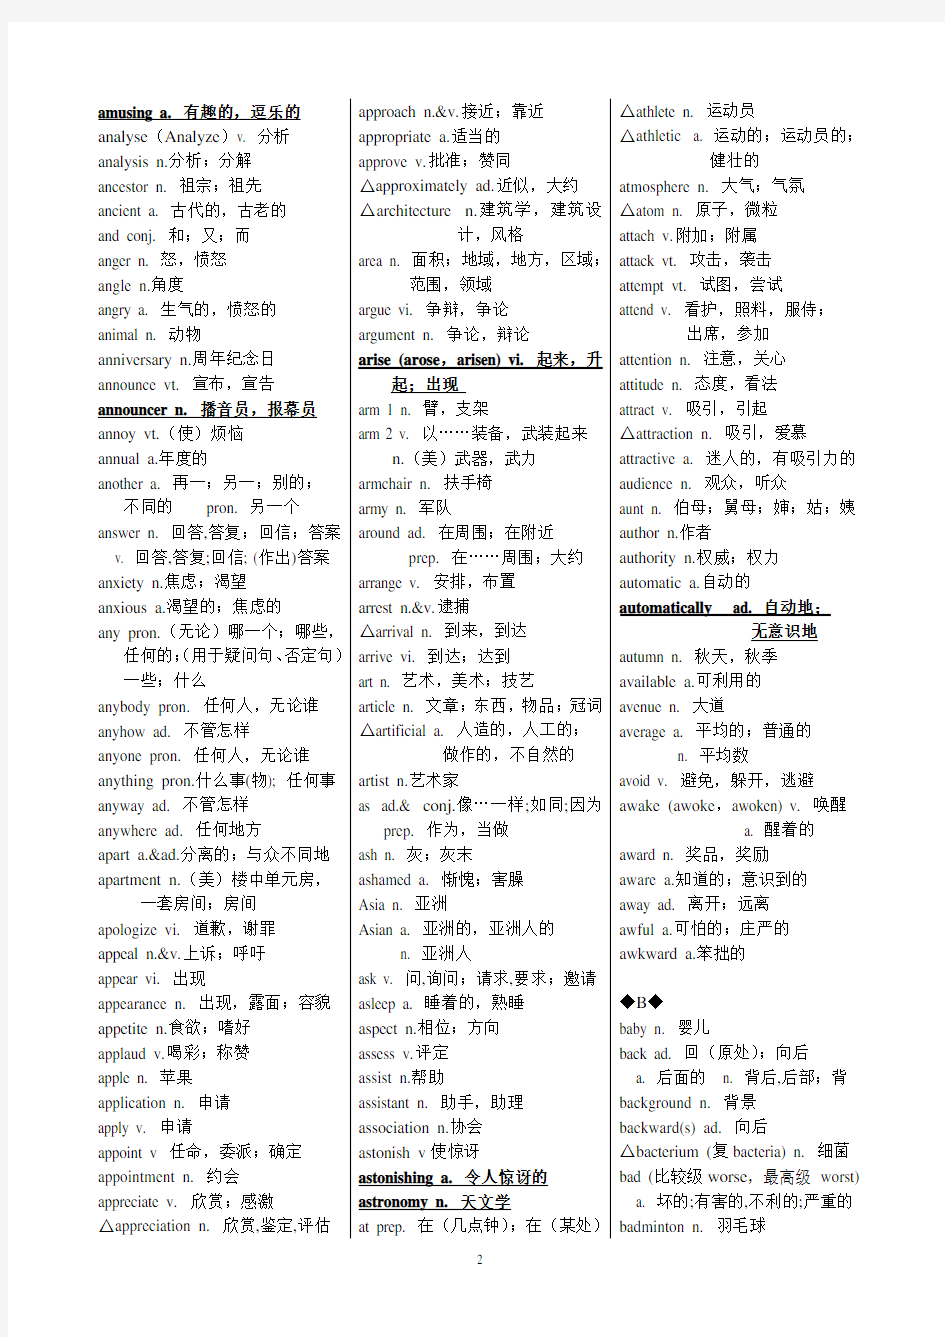 2018年天津市高考英语考纲词汇表(官方完整版)